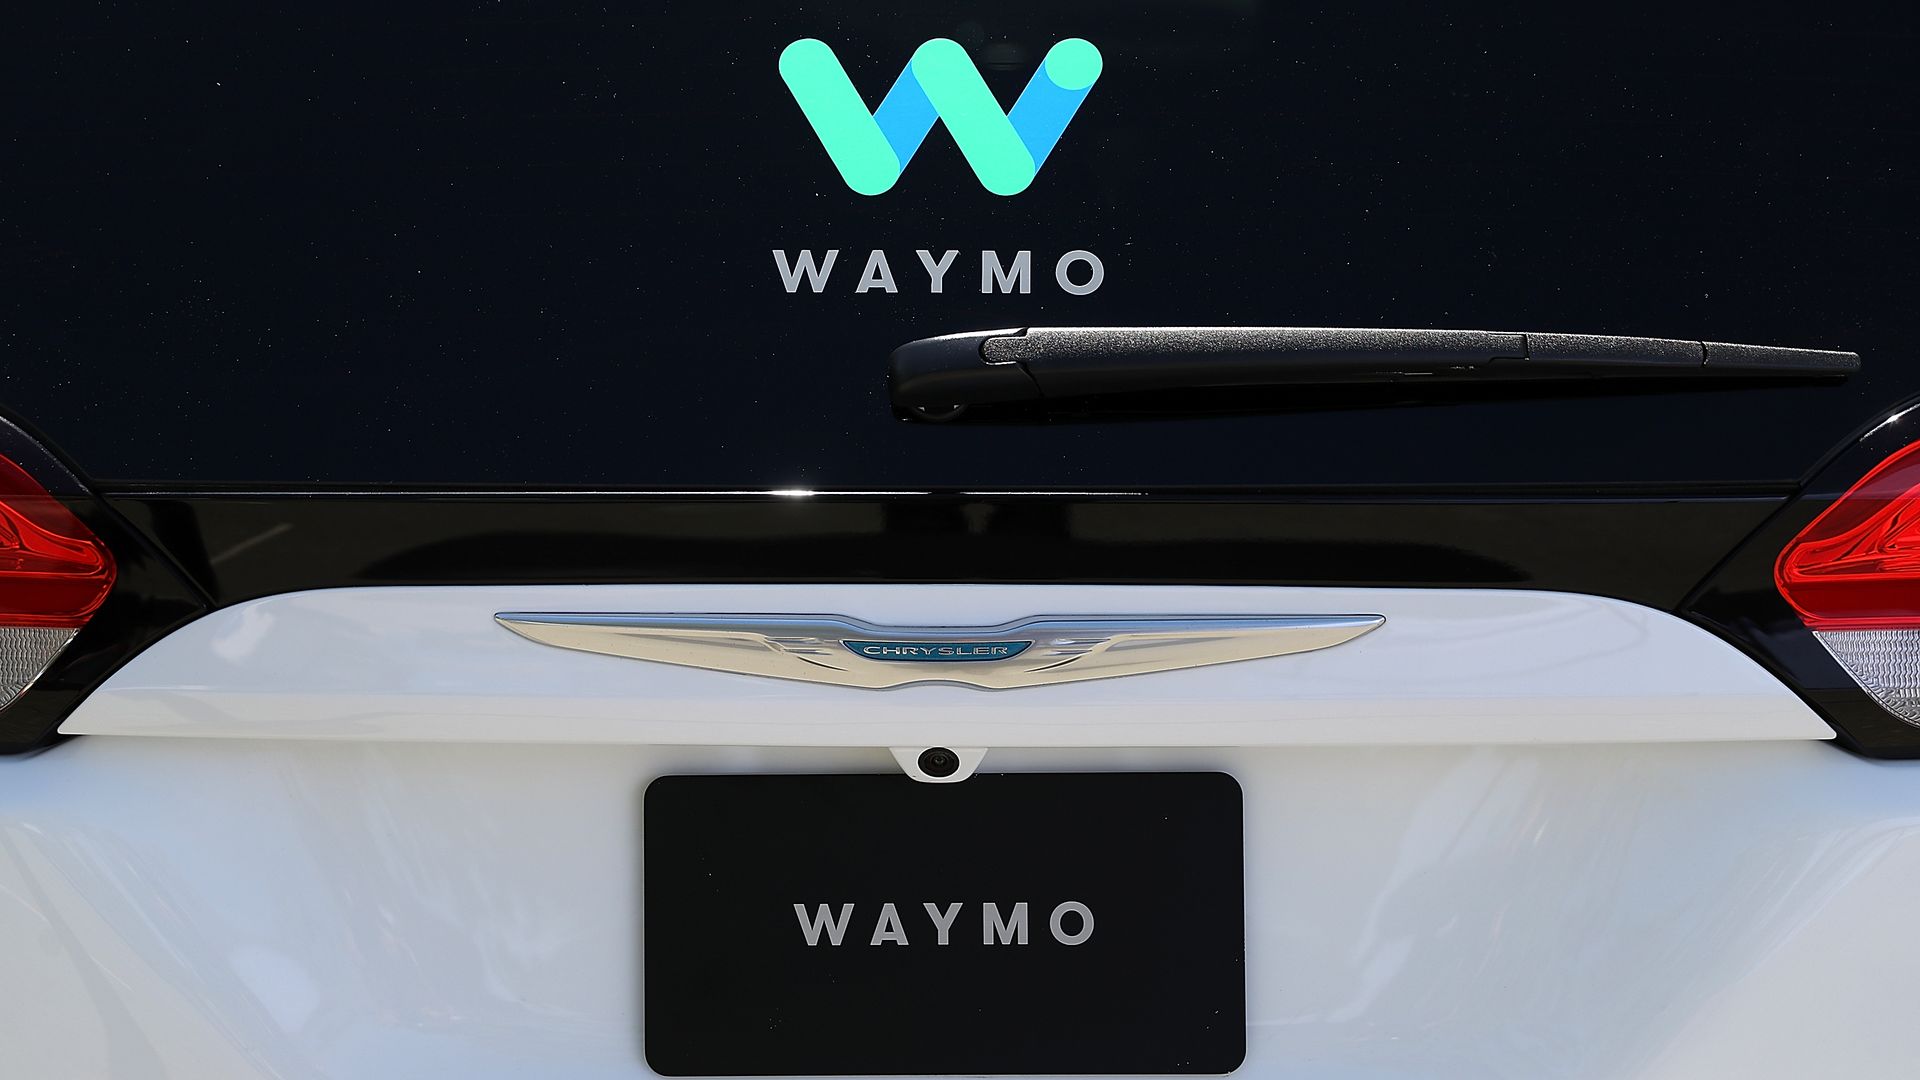 Self-driving cChrysler car Waymo. 